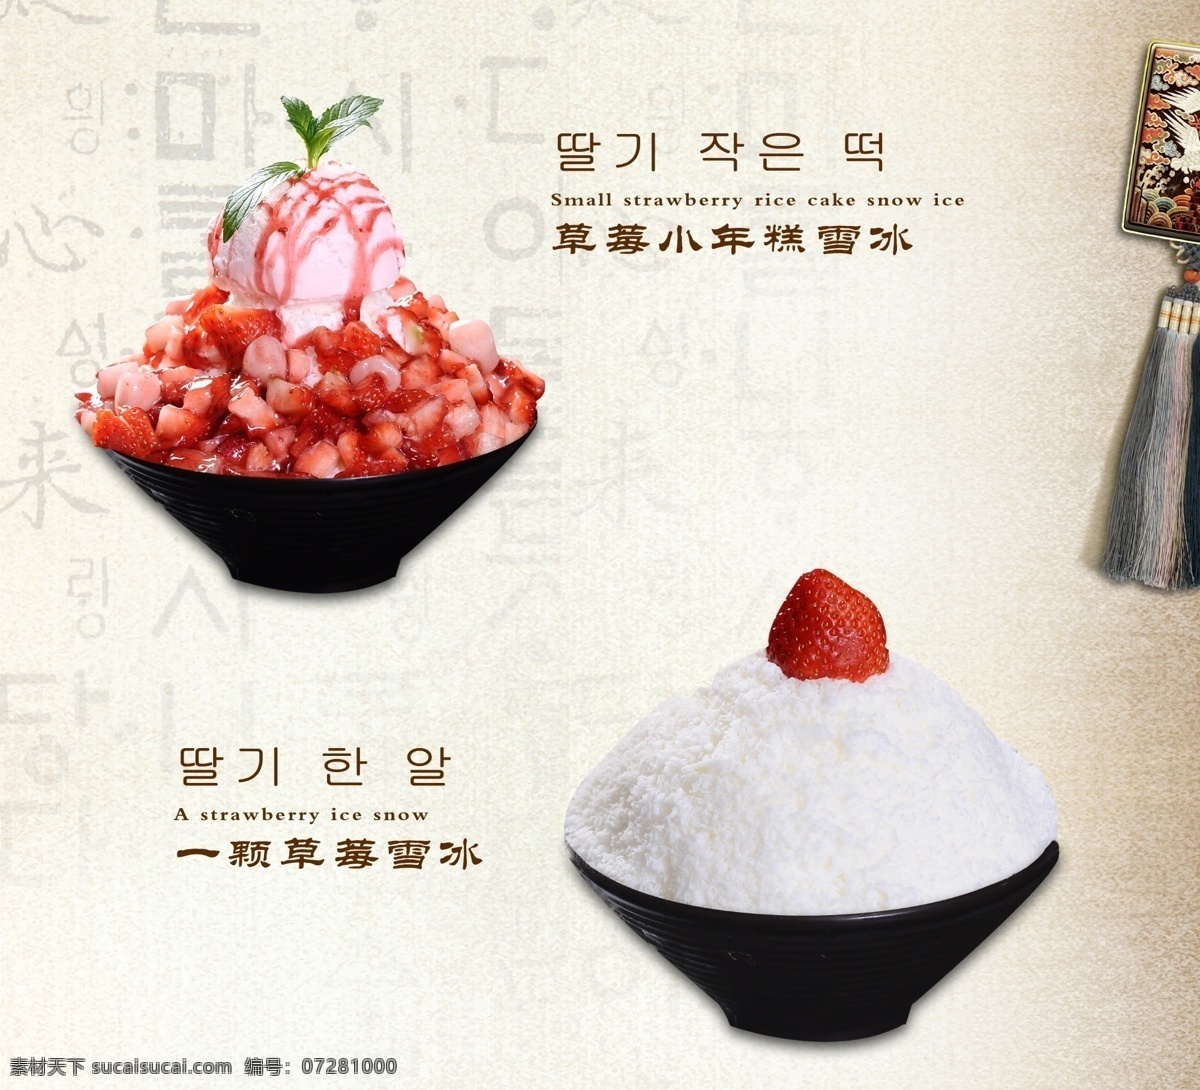 韩国灯箱 韩国 菜单 宣传 灯箱 广告 分层